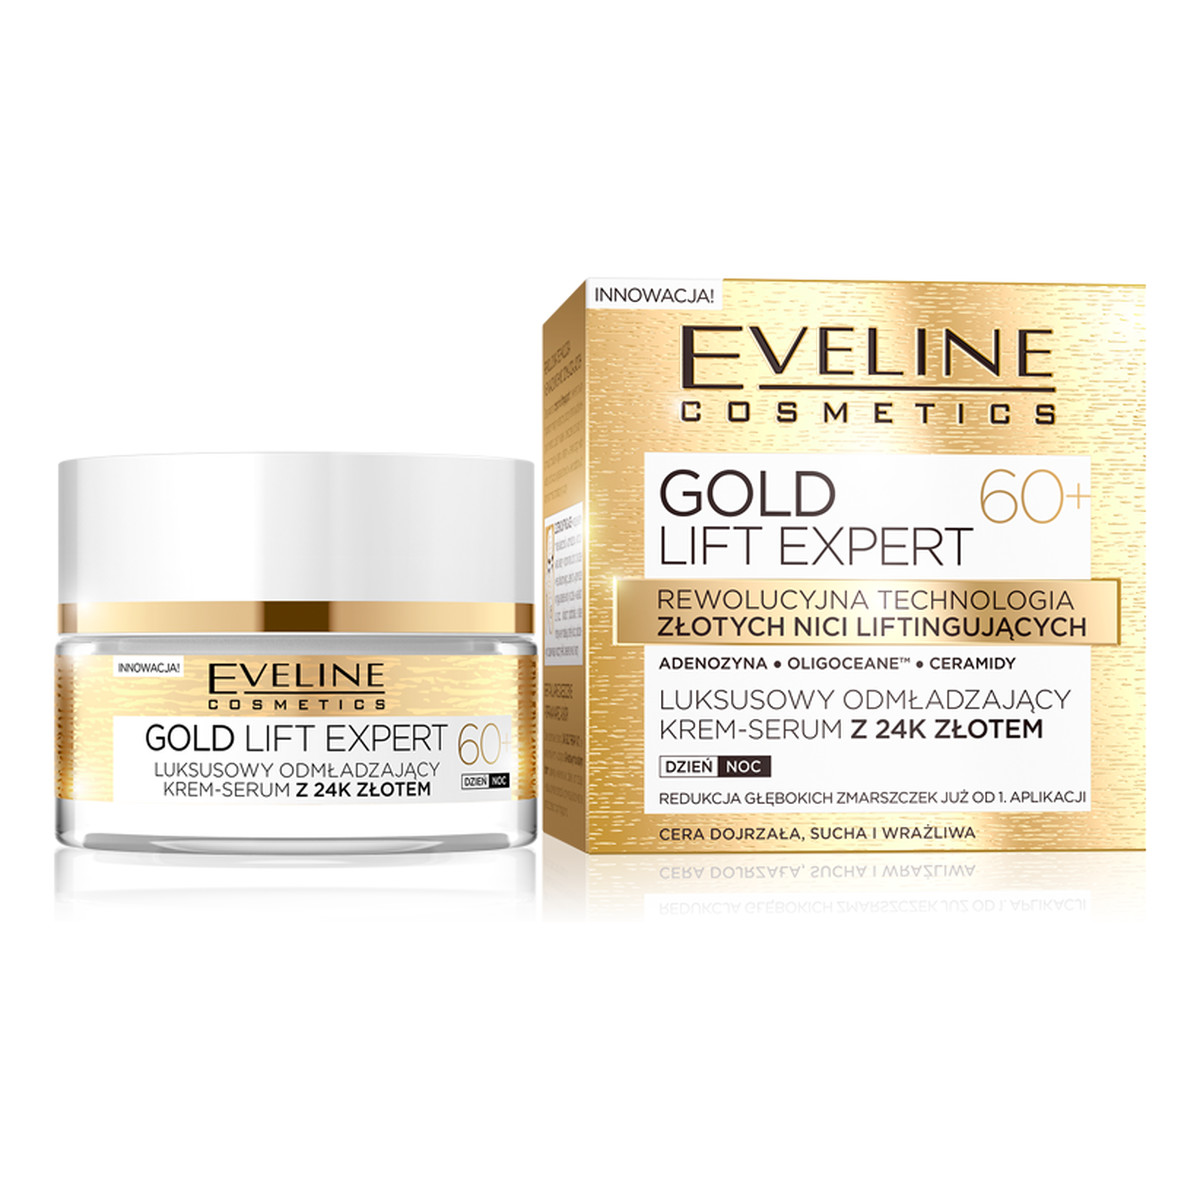 Eveline Gold Lift Expert 60+ Luksusowy Odmładzający Krem-Serum Z 24K Złotem 50ml